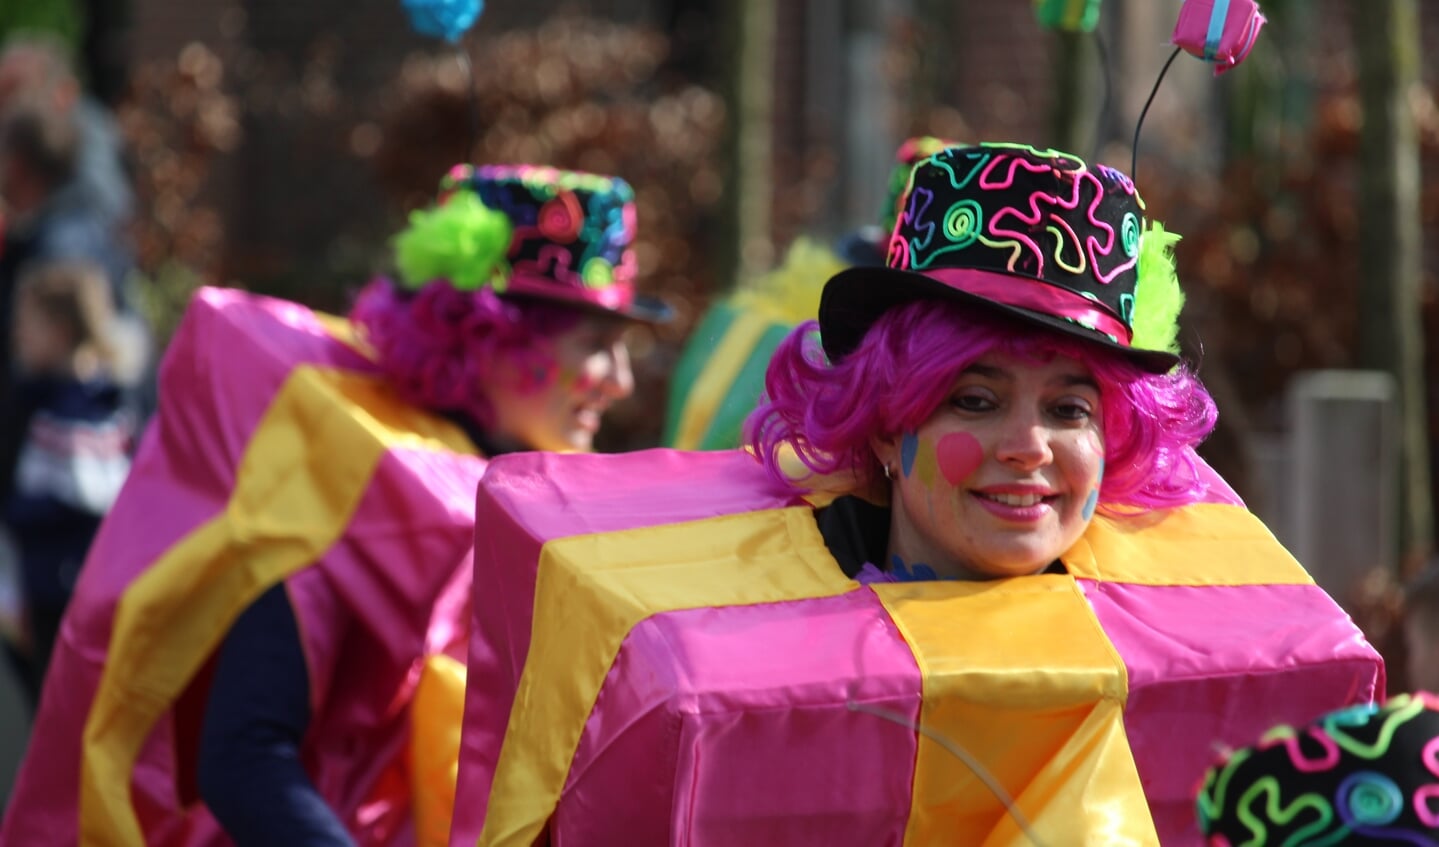 Carnavalsoptocht in Ewijk 